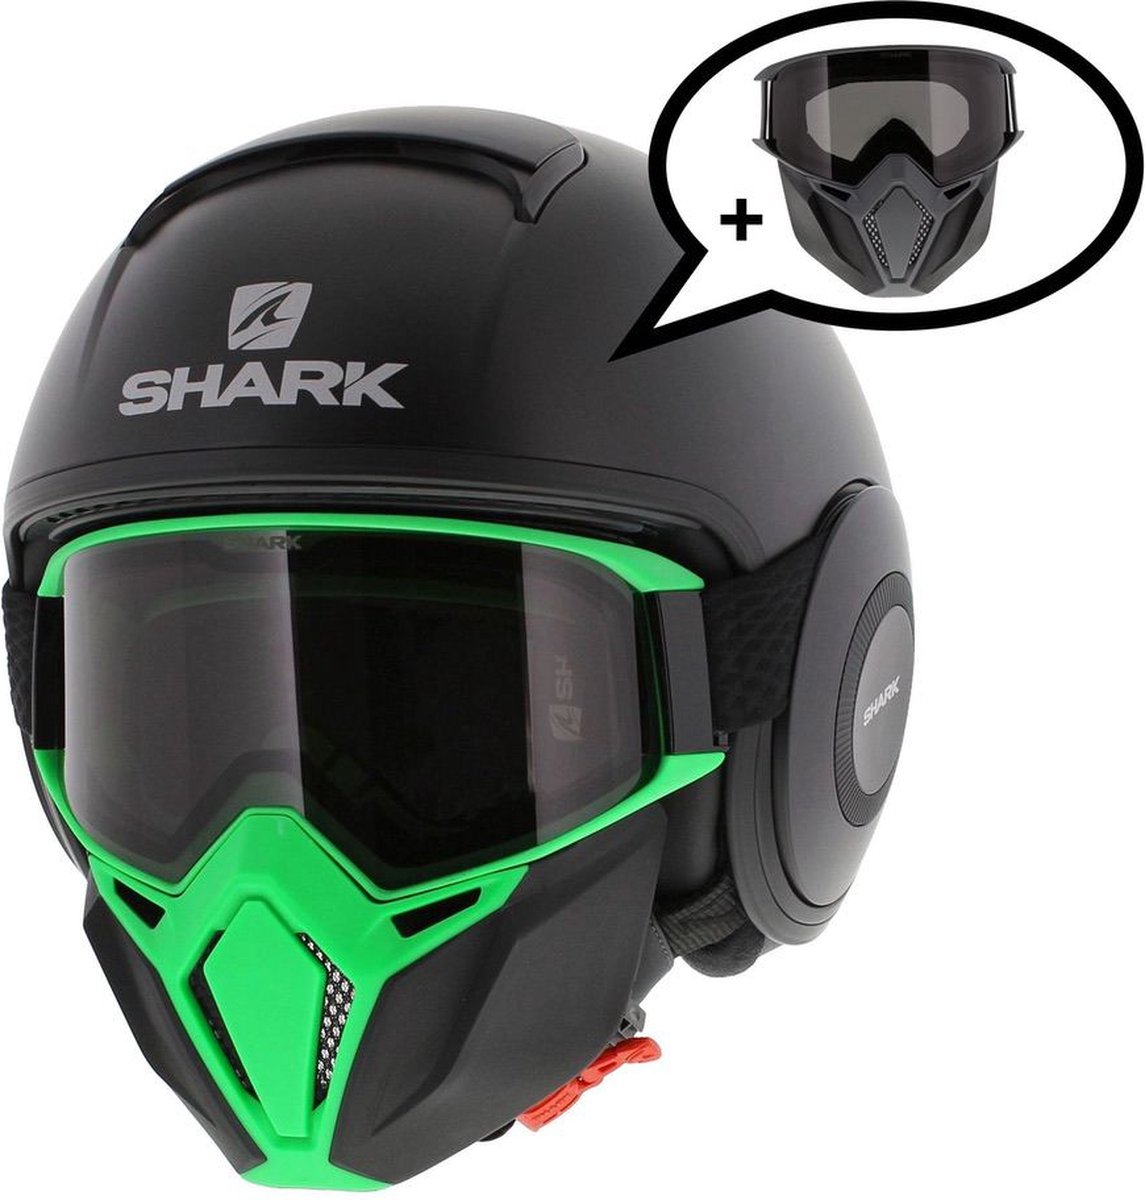 Shark Street Drak helm mat zwart groen M - Special Edition met gratis extra zwart antraciet mondstuk